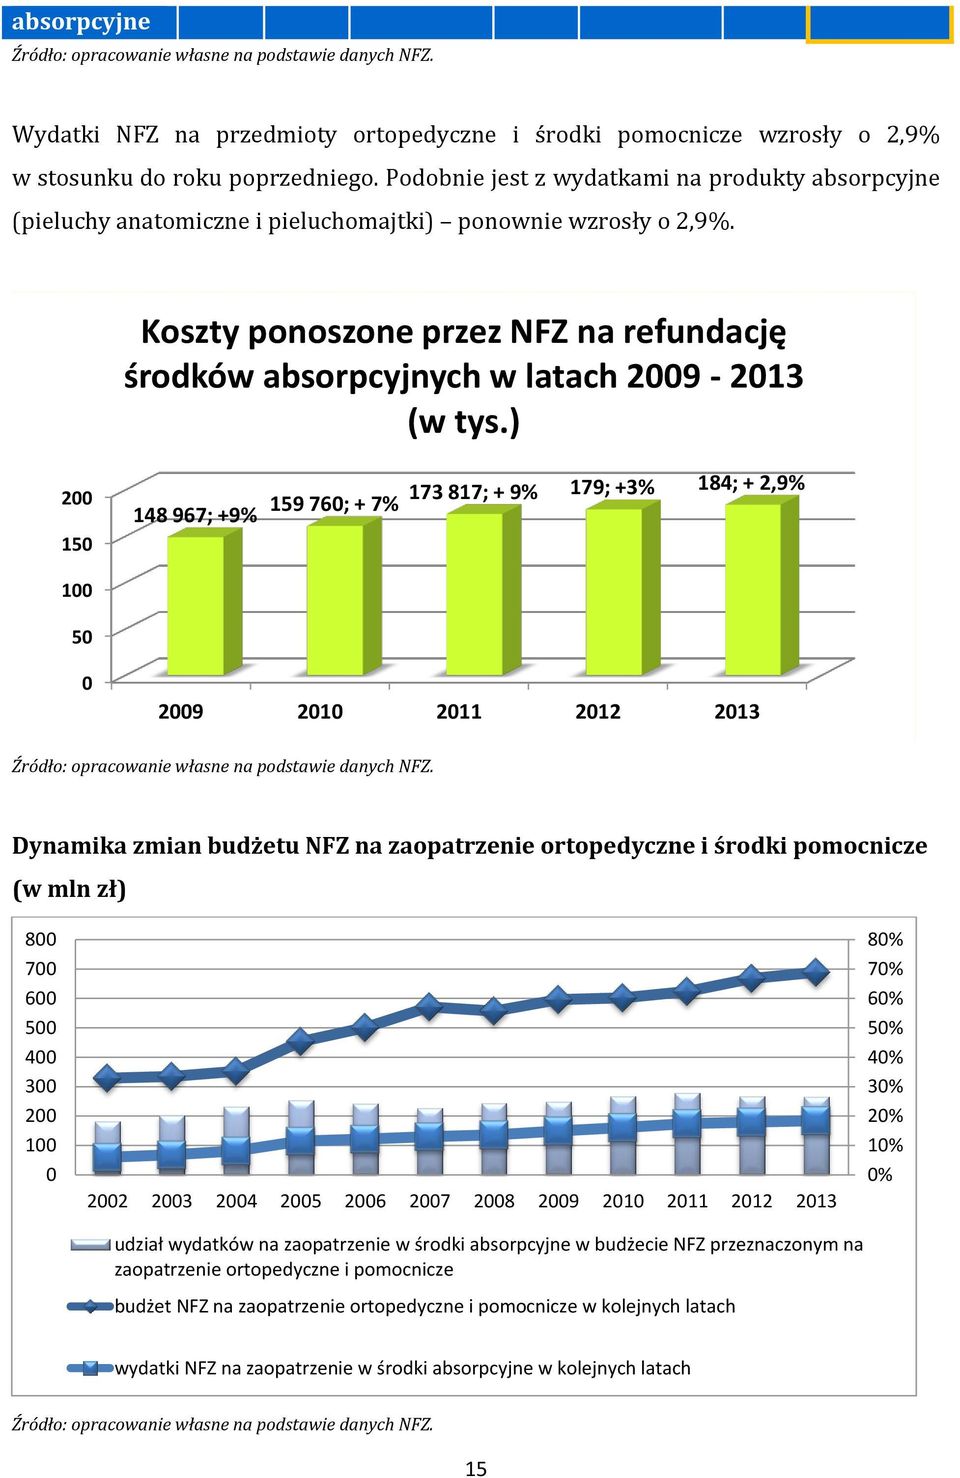 Koszty ponoszone przez NFZ na refundację środków absorpcyjnych w latach 2009-2013 (w tys.